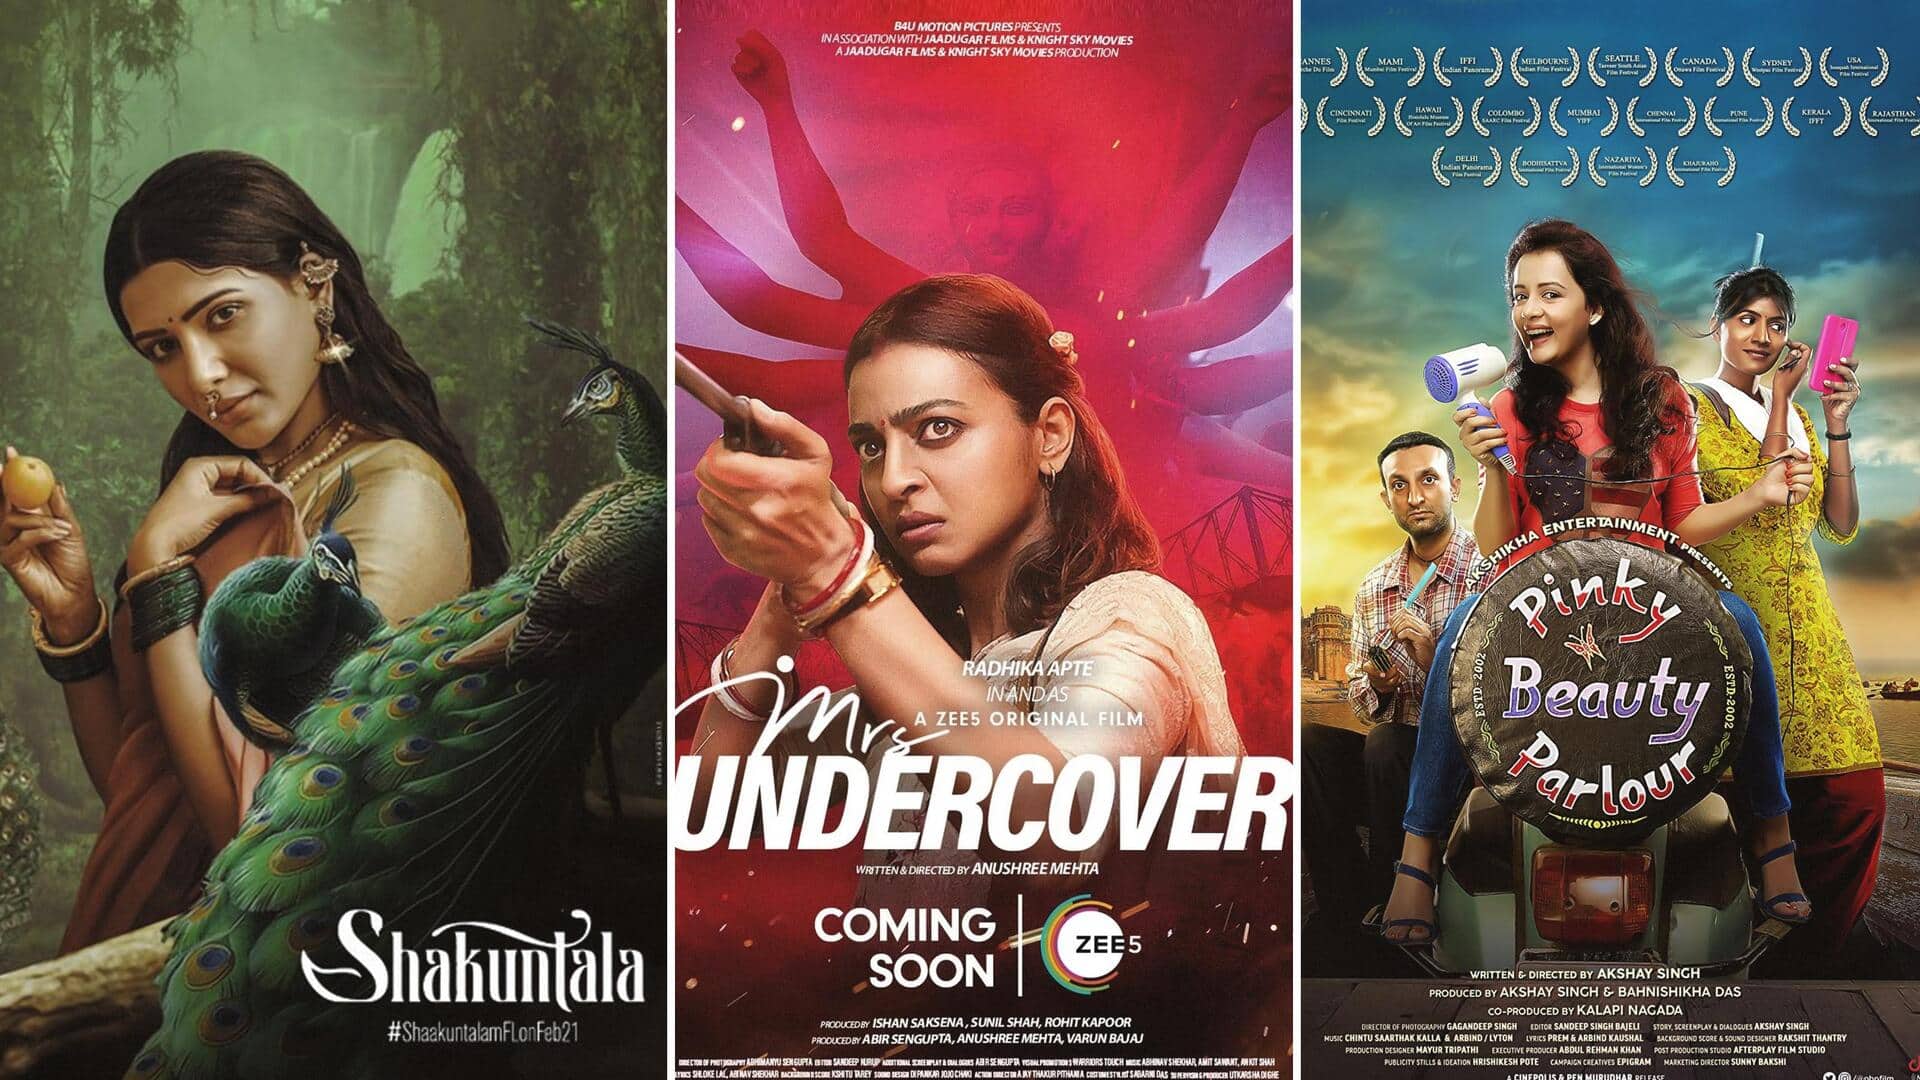 'शाकुंतलम' से 'मिसेज अंडरकवर' तक, इस हफ्ते OTT और सिनेमाघरों में रिलीज हो रहीं ये फिल्में